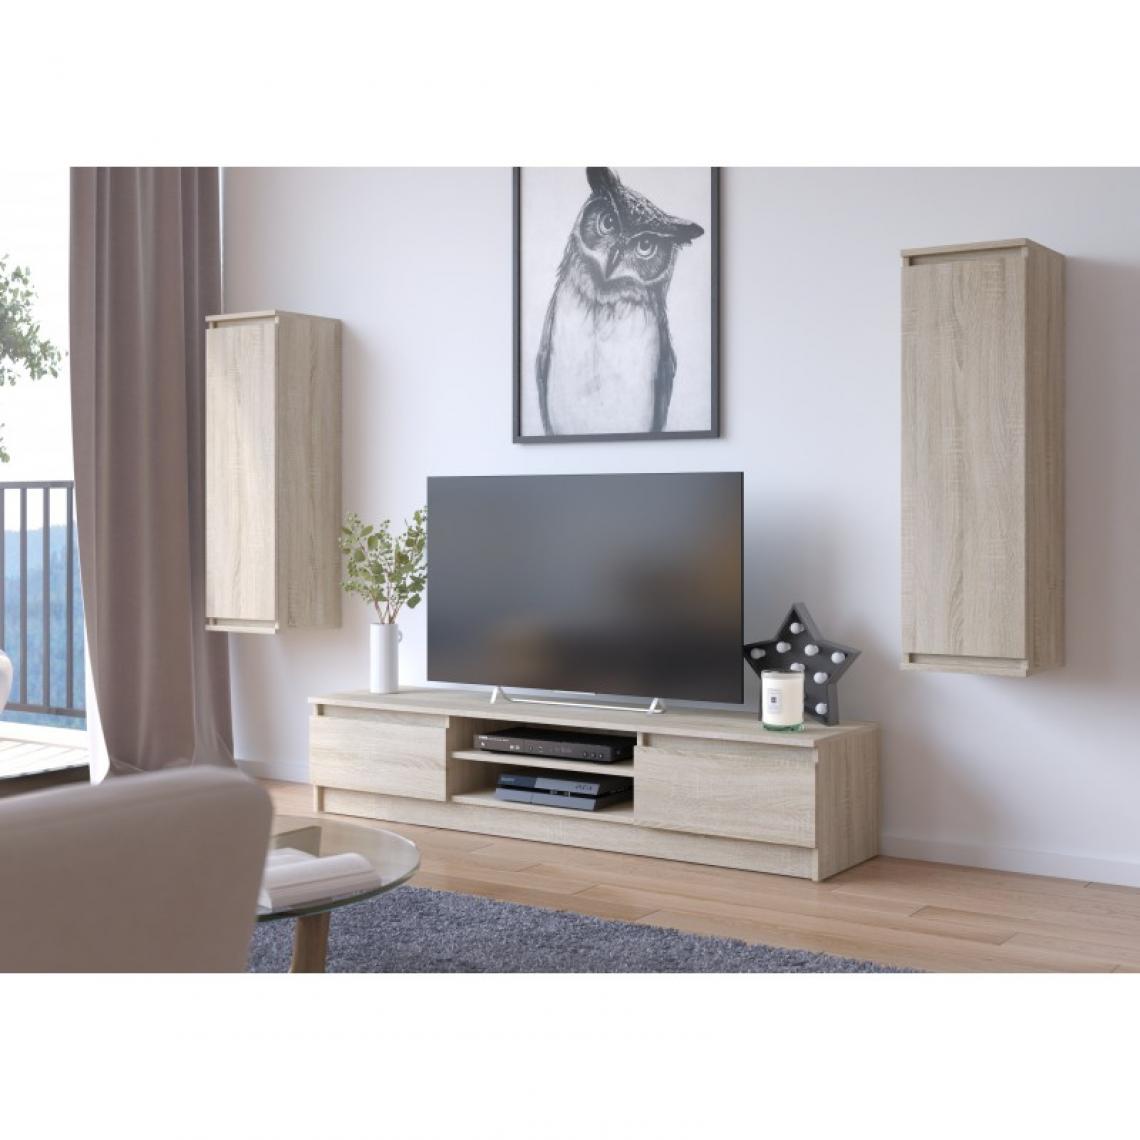 Hucoco - SUBLIM - Ensemble de meubles élégants salon/séjour - 3 éléments meuble TV + 2 étagères murales - Style pratique moderne - Sonoma - Meubles TV, Hi-Fi